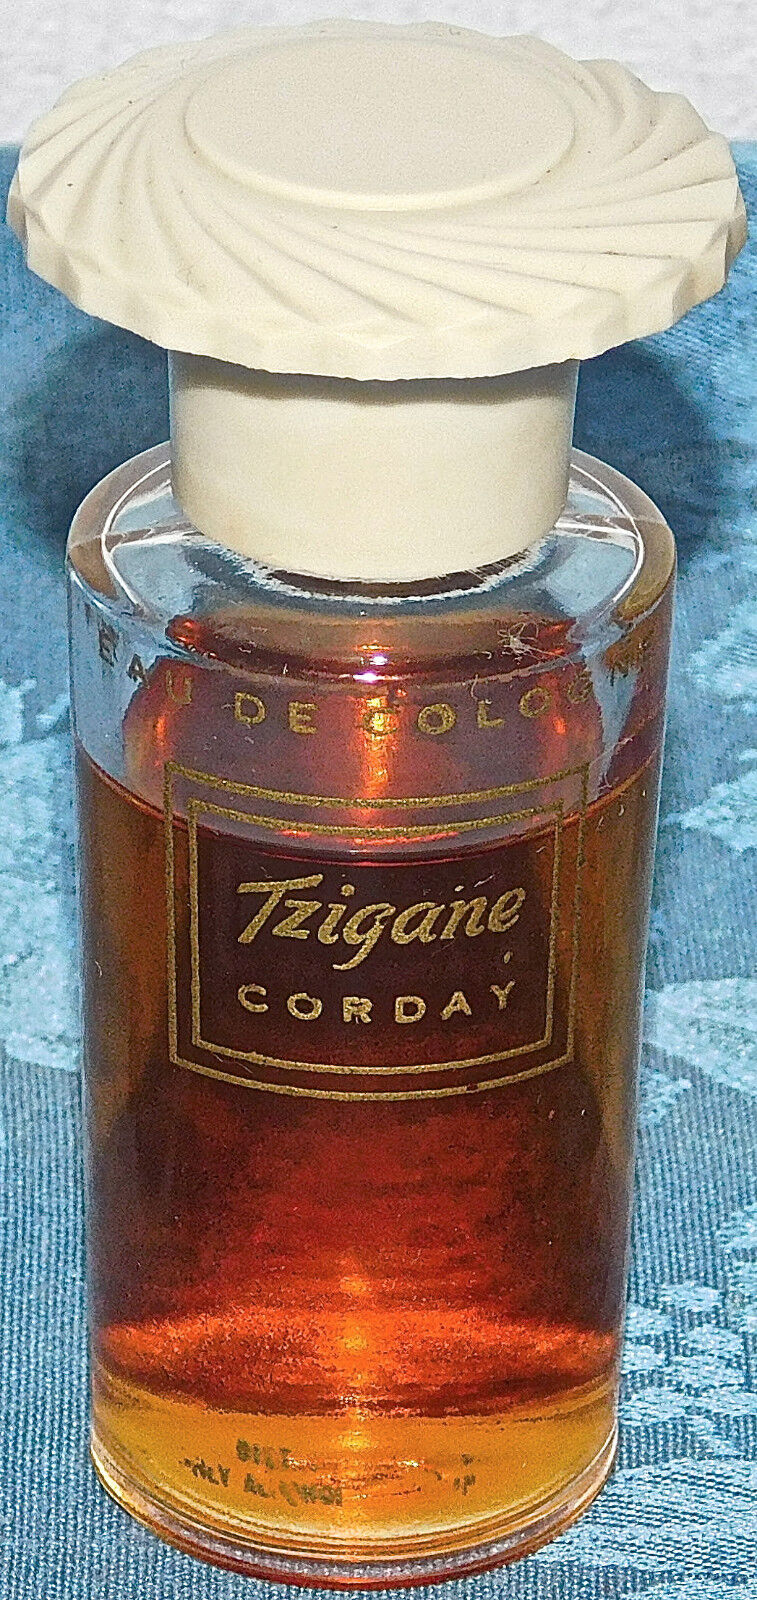 Vintage Corday Tzigane EAU DE COLOGNE SUPER RARE 1 OZ BOTTLE 80% FULL 30\'S 40\'S?